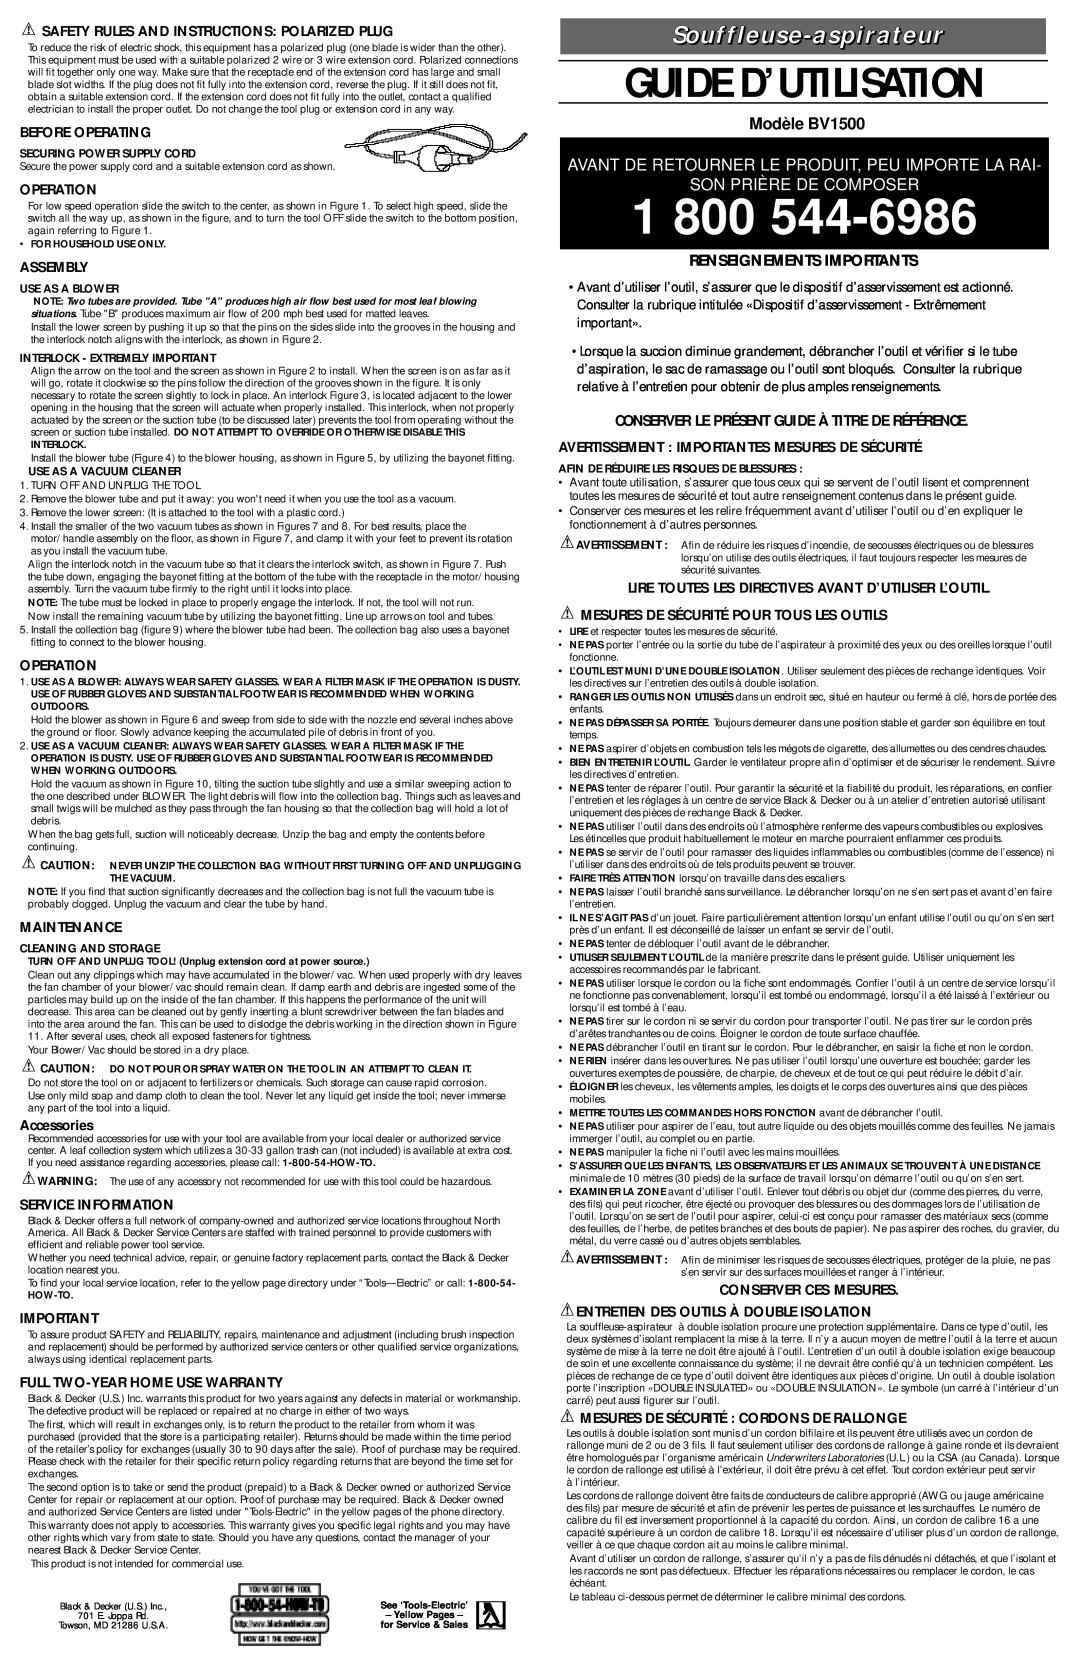 Black & Decker 387739 instruction manual Guide D’Utilisation, Souffleuse-aspirateur, Modèle BV1500, Son Prière De Composer 